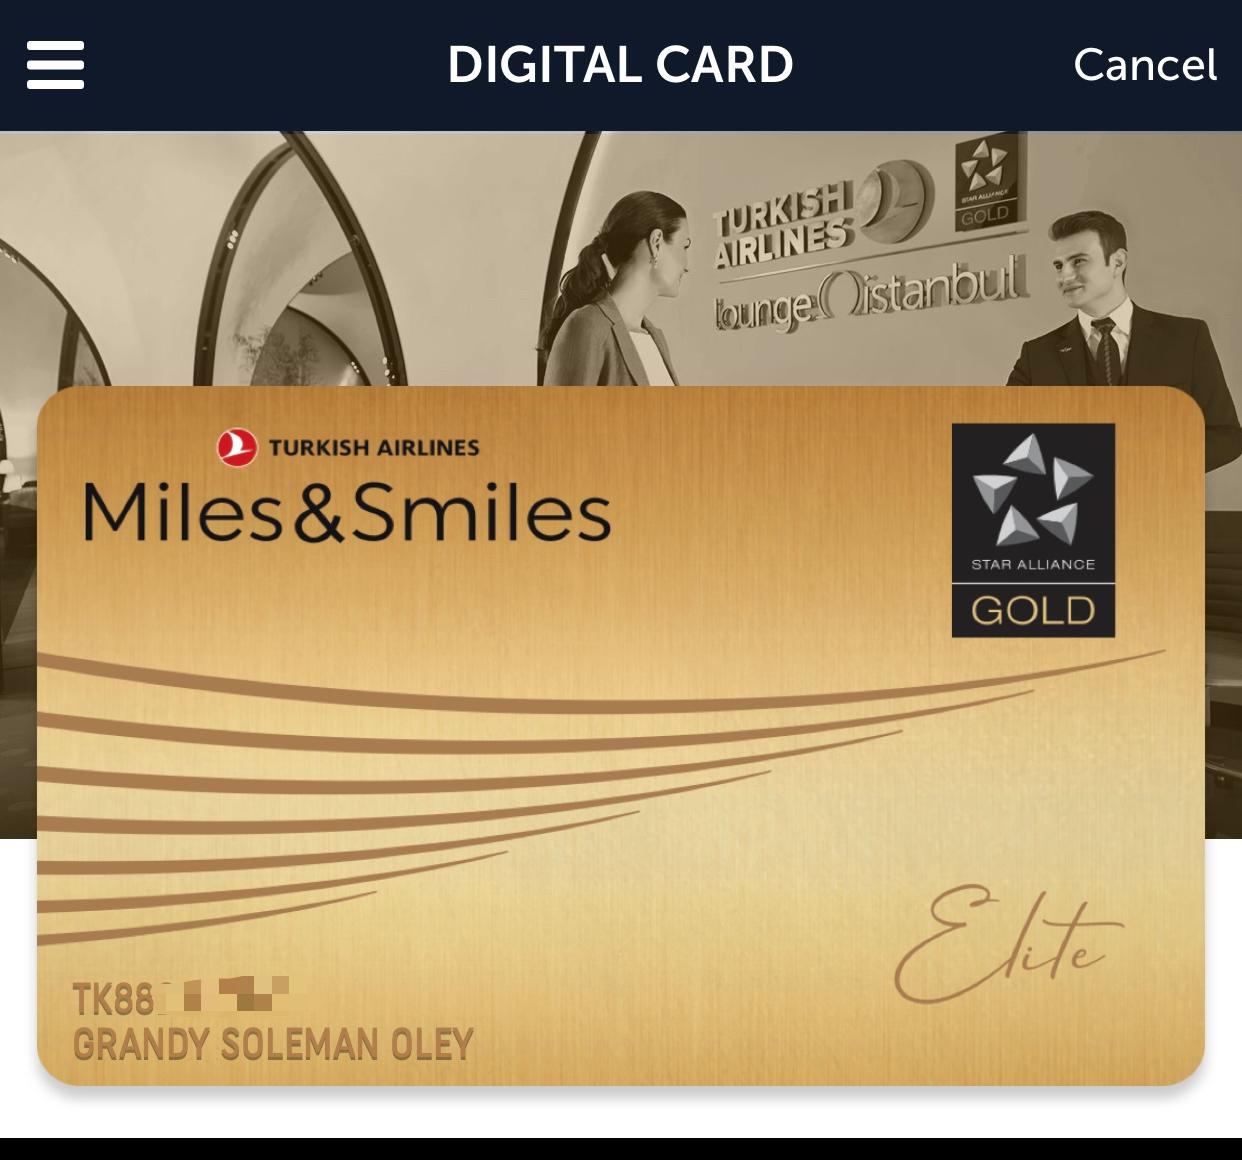 Miles & Smiles Elite ( Star Alliance Gold) berhasil diperoleh dengan status match dengan Garuda Miles Platinum